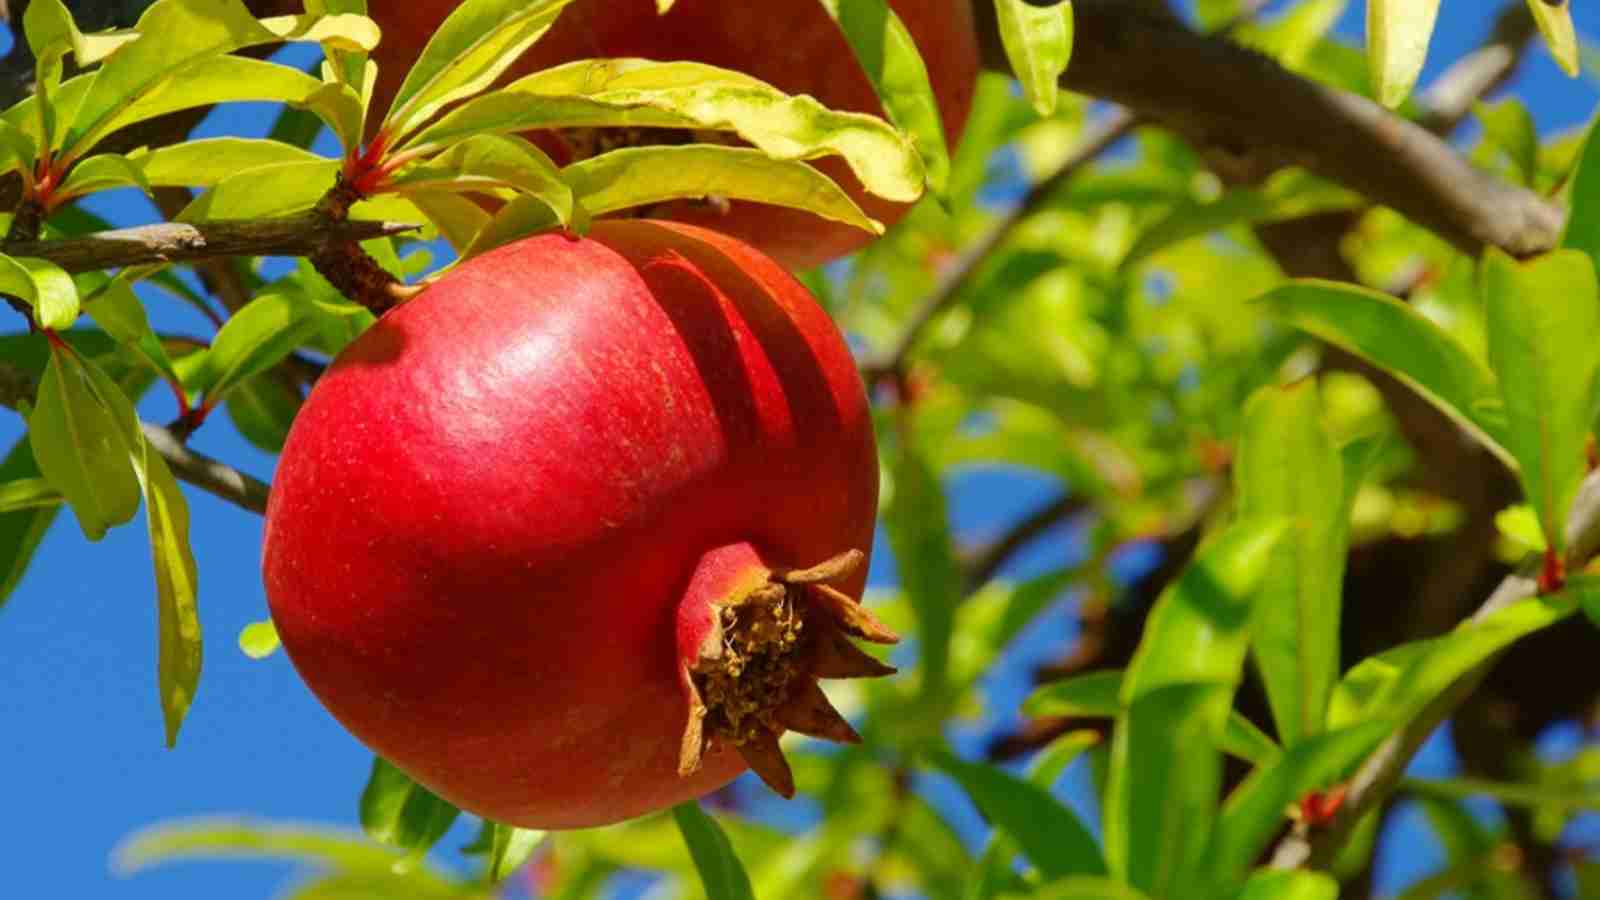 Pomegranate GK Facts for Children